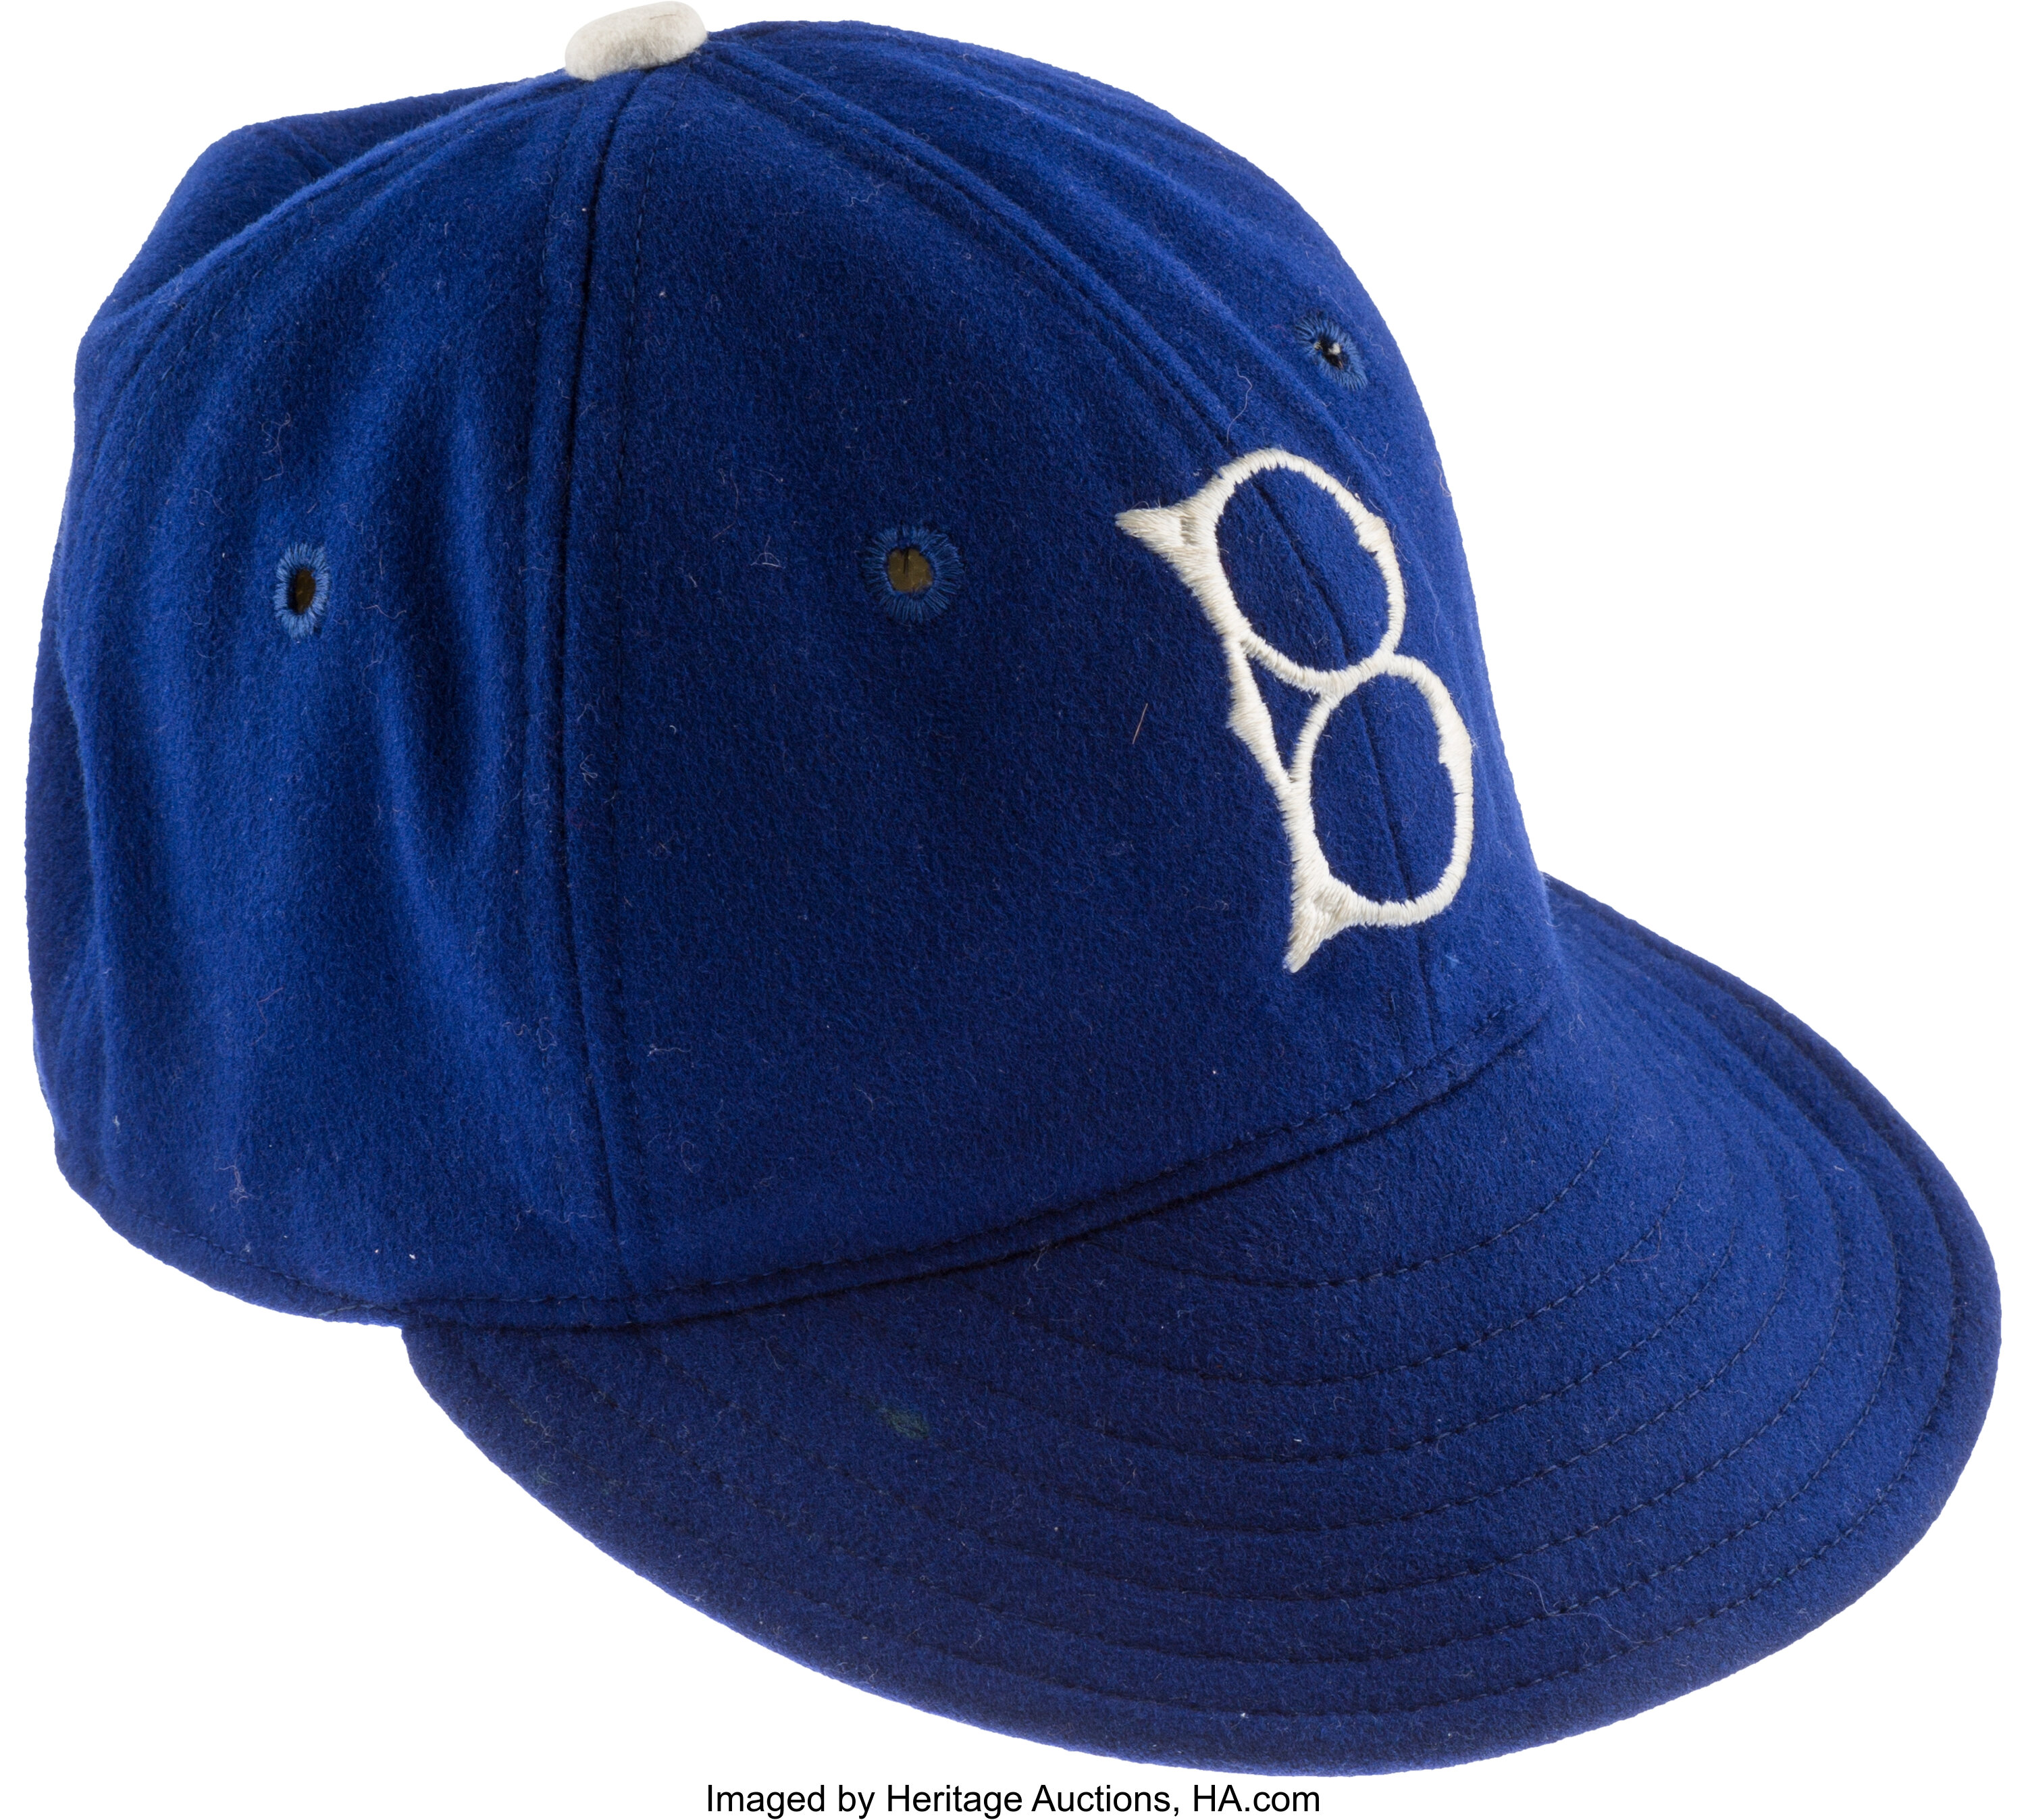 1944-45 Game Worn Brooklyn Dodgers Cap Attributed to Eddie